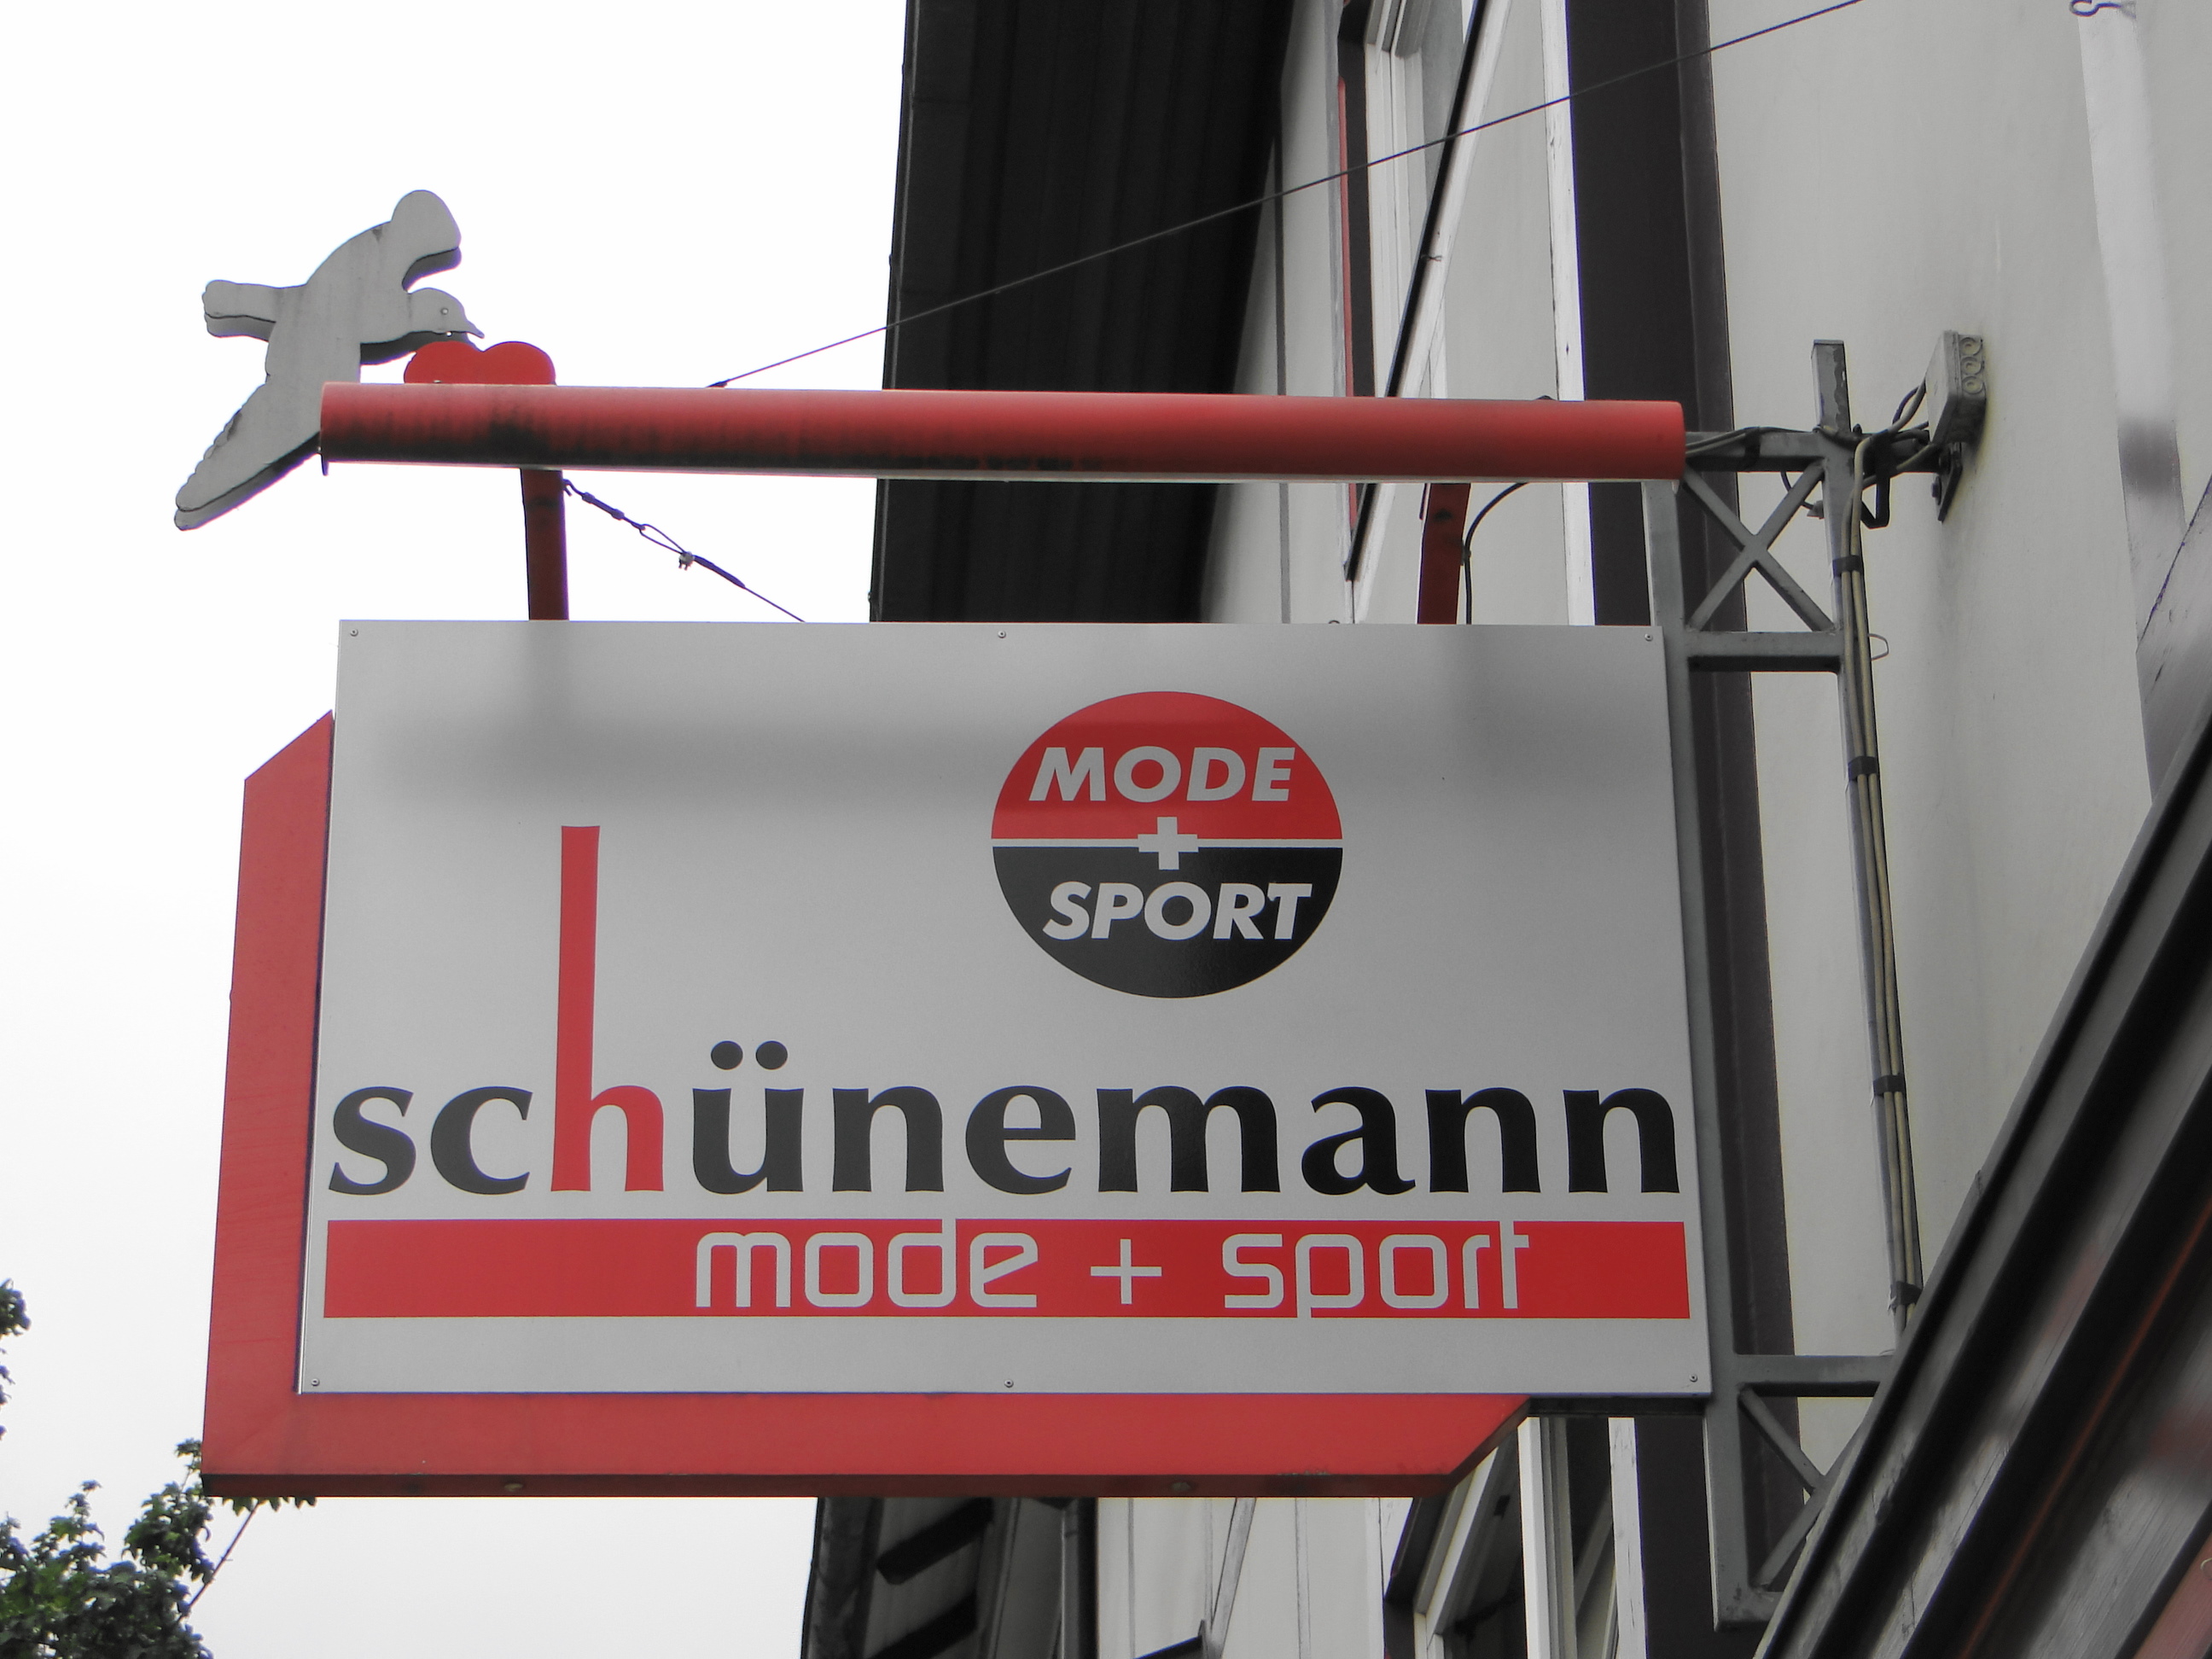 Modehandel Kaufhaus Schünemann KG in der Altendorfer Str. 12, Aushangschild